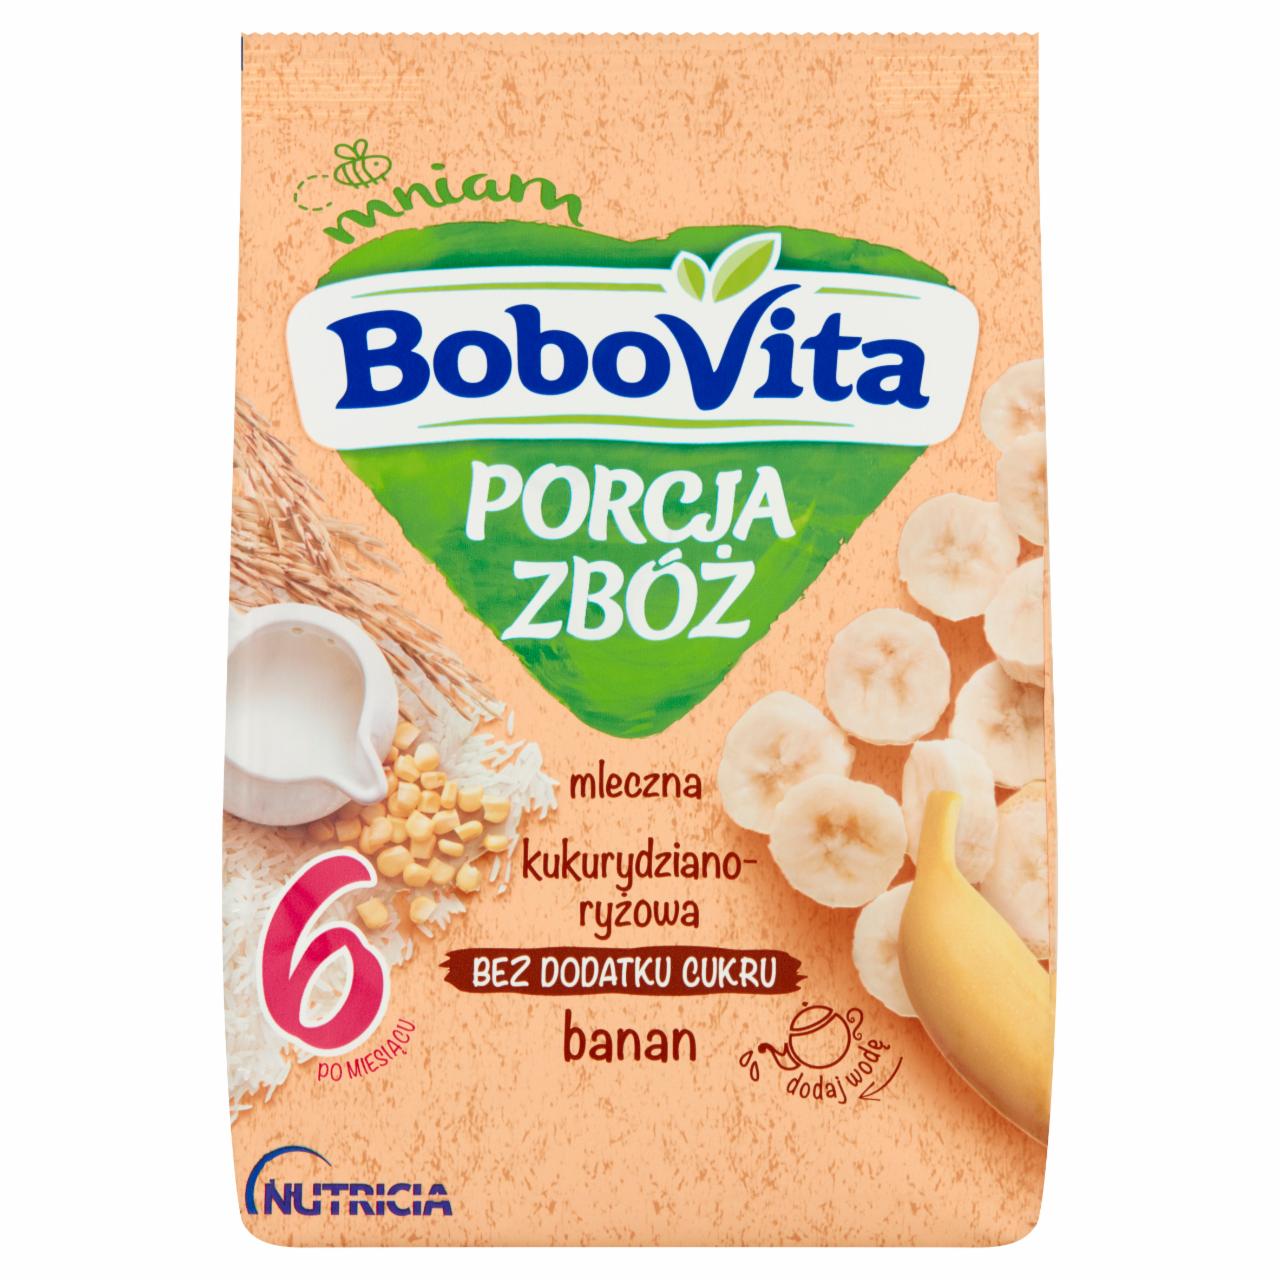 Zdjęcia - BoboVita Porcja Zbóż Kaszka mleczna kukurydziano-ryżowa banan po 6 miesiącu 210 g